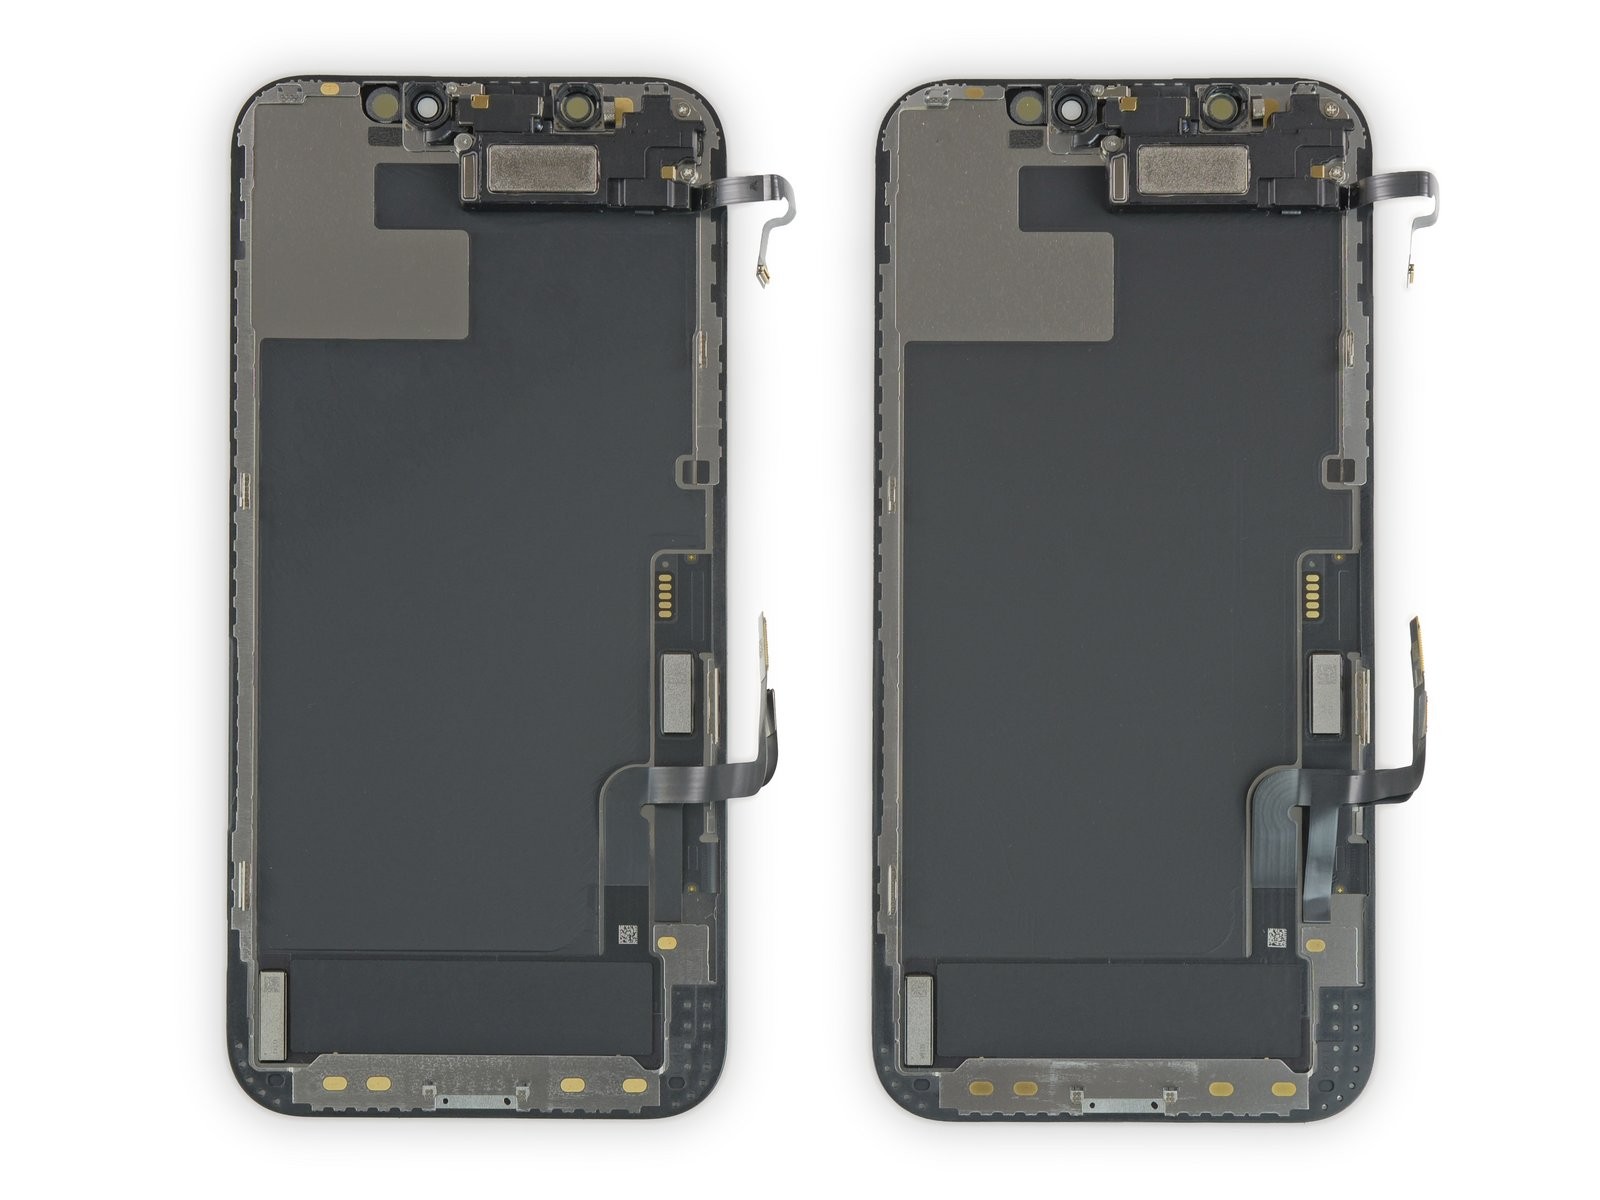 内部近乎一致 拆解iPhone 12与iPhone 12 Pro